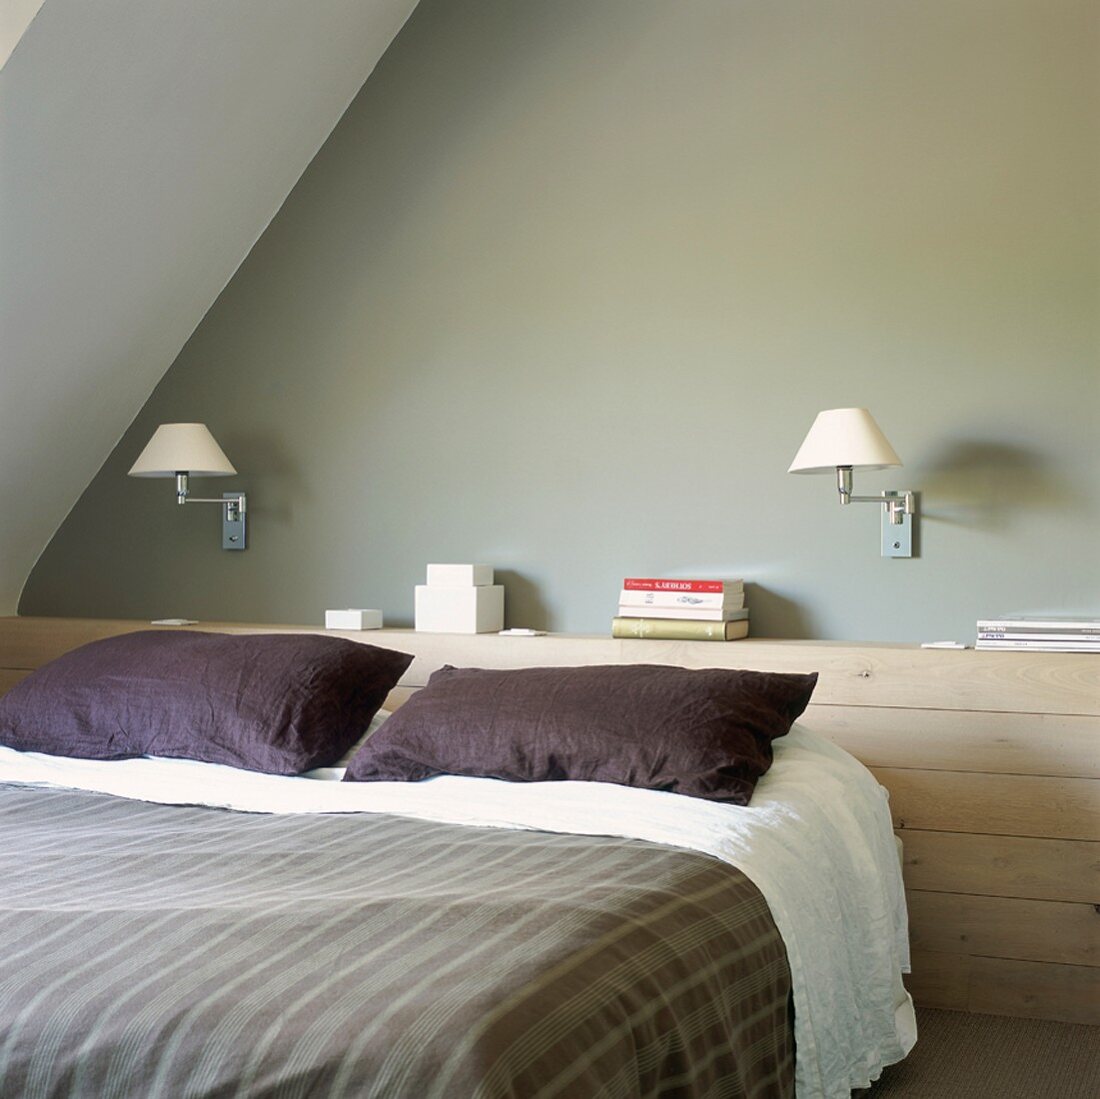 Ein holzvertäfelter Wandvorsprung dient am Kopfteil des Bettes als Ablagefläche